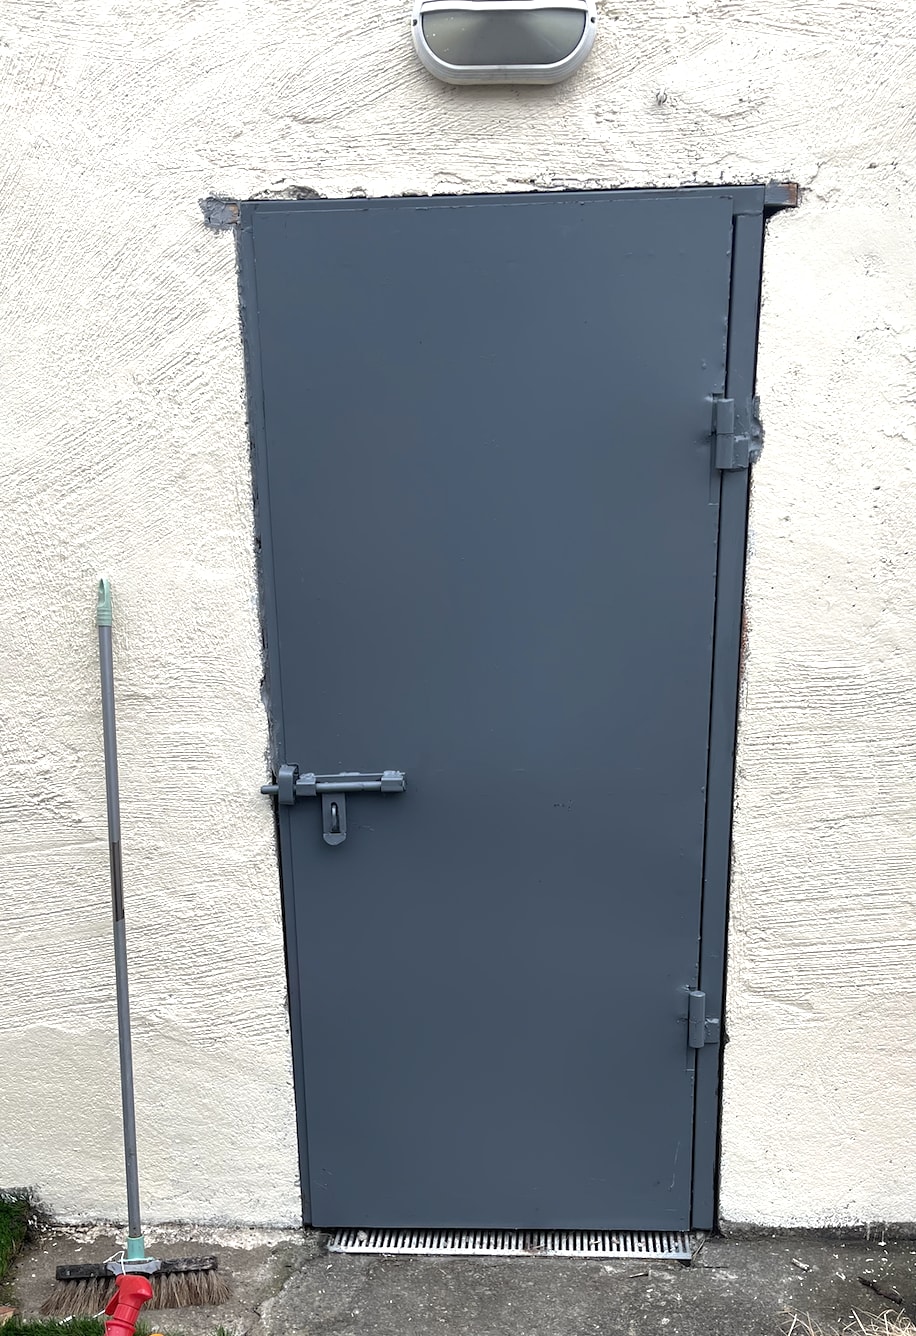 Proper steel, secure, door installed